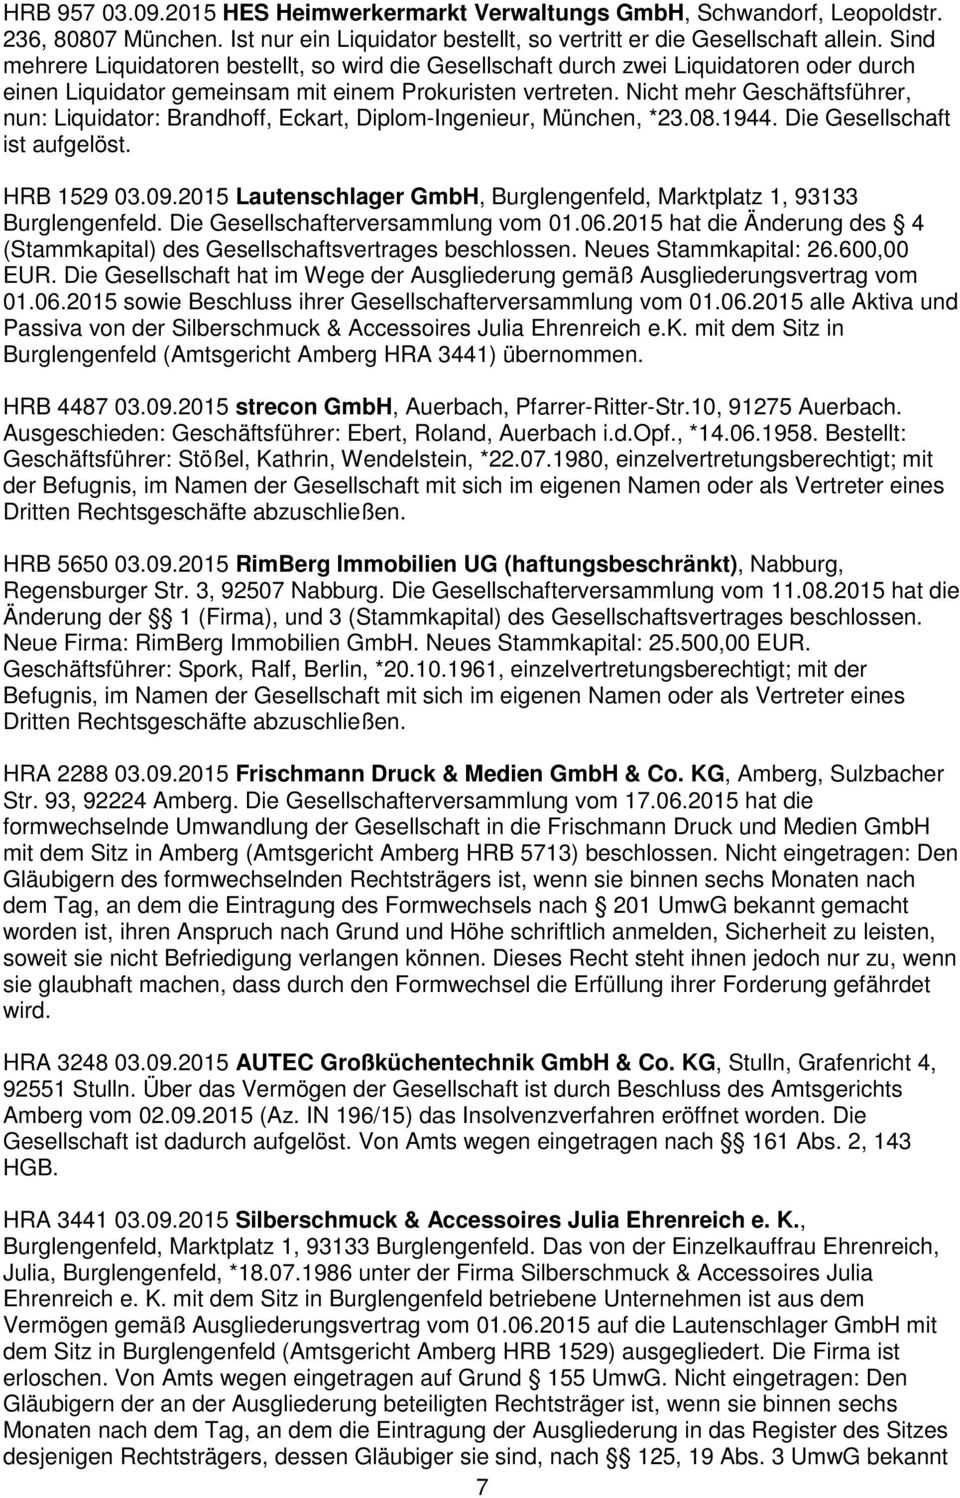 Nicht mehr Geschäftsführer, nun: Liquidator: Brandhoff, Eckart, Diplom-Ingenieur, München, *23.08.1944. Die Gesellschaft ist aufgelöst. HRB 1529 03.09.